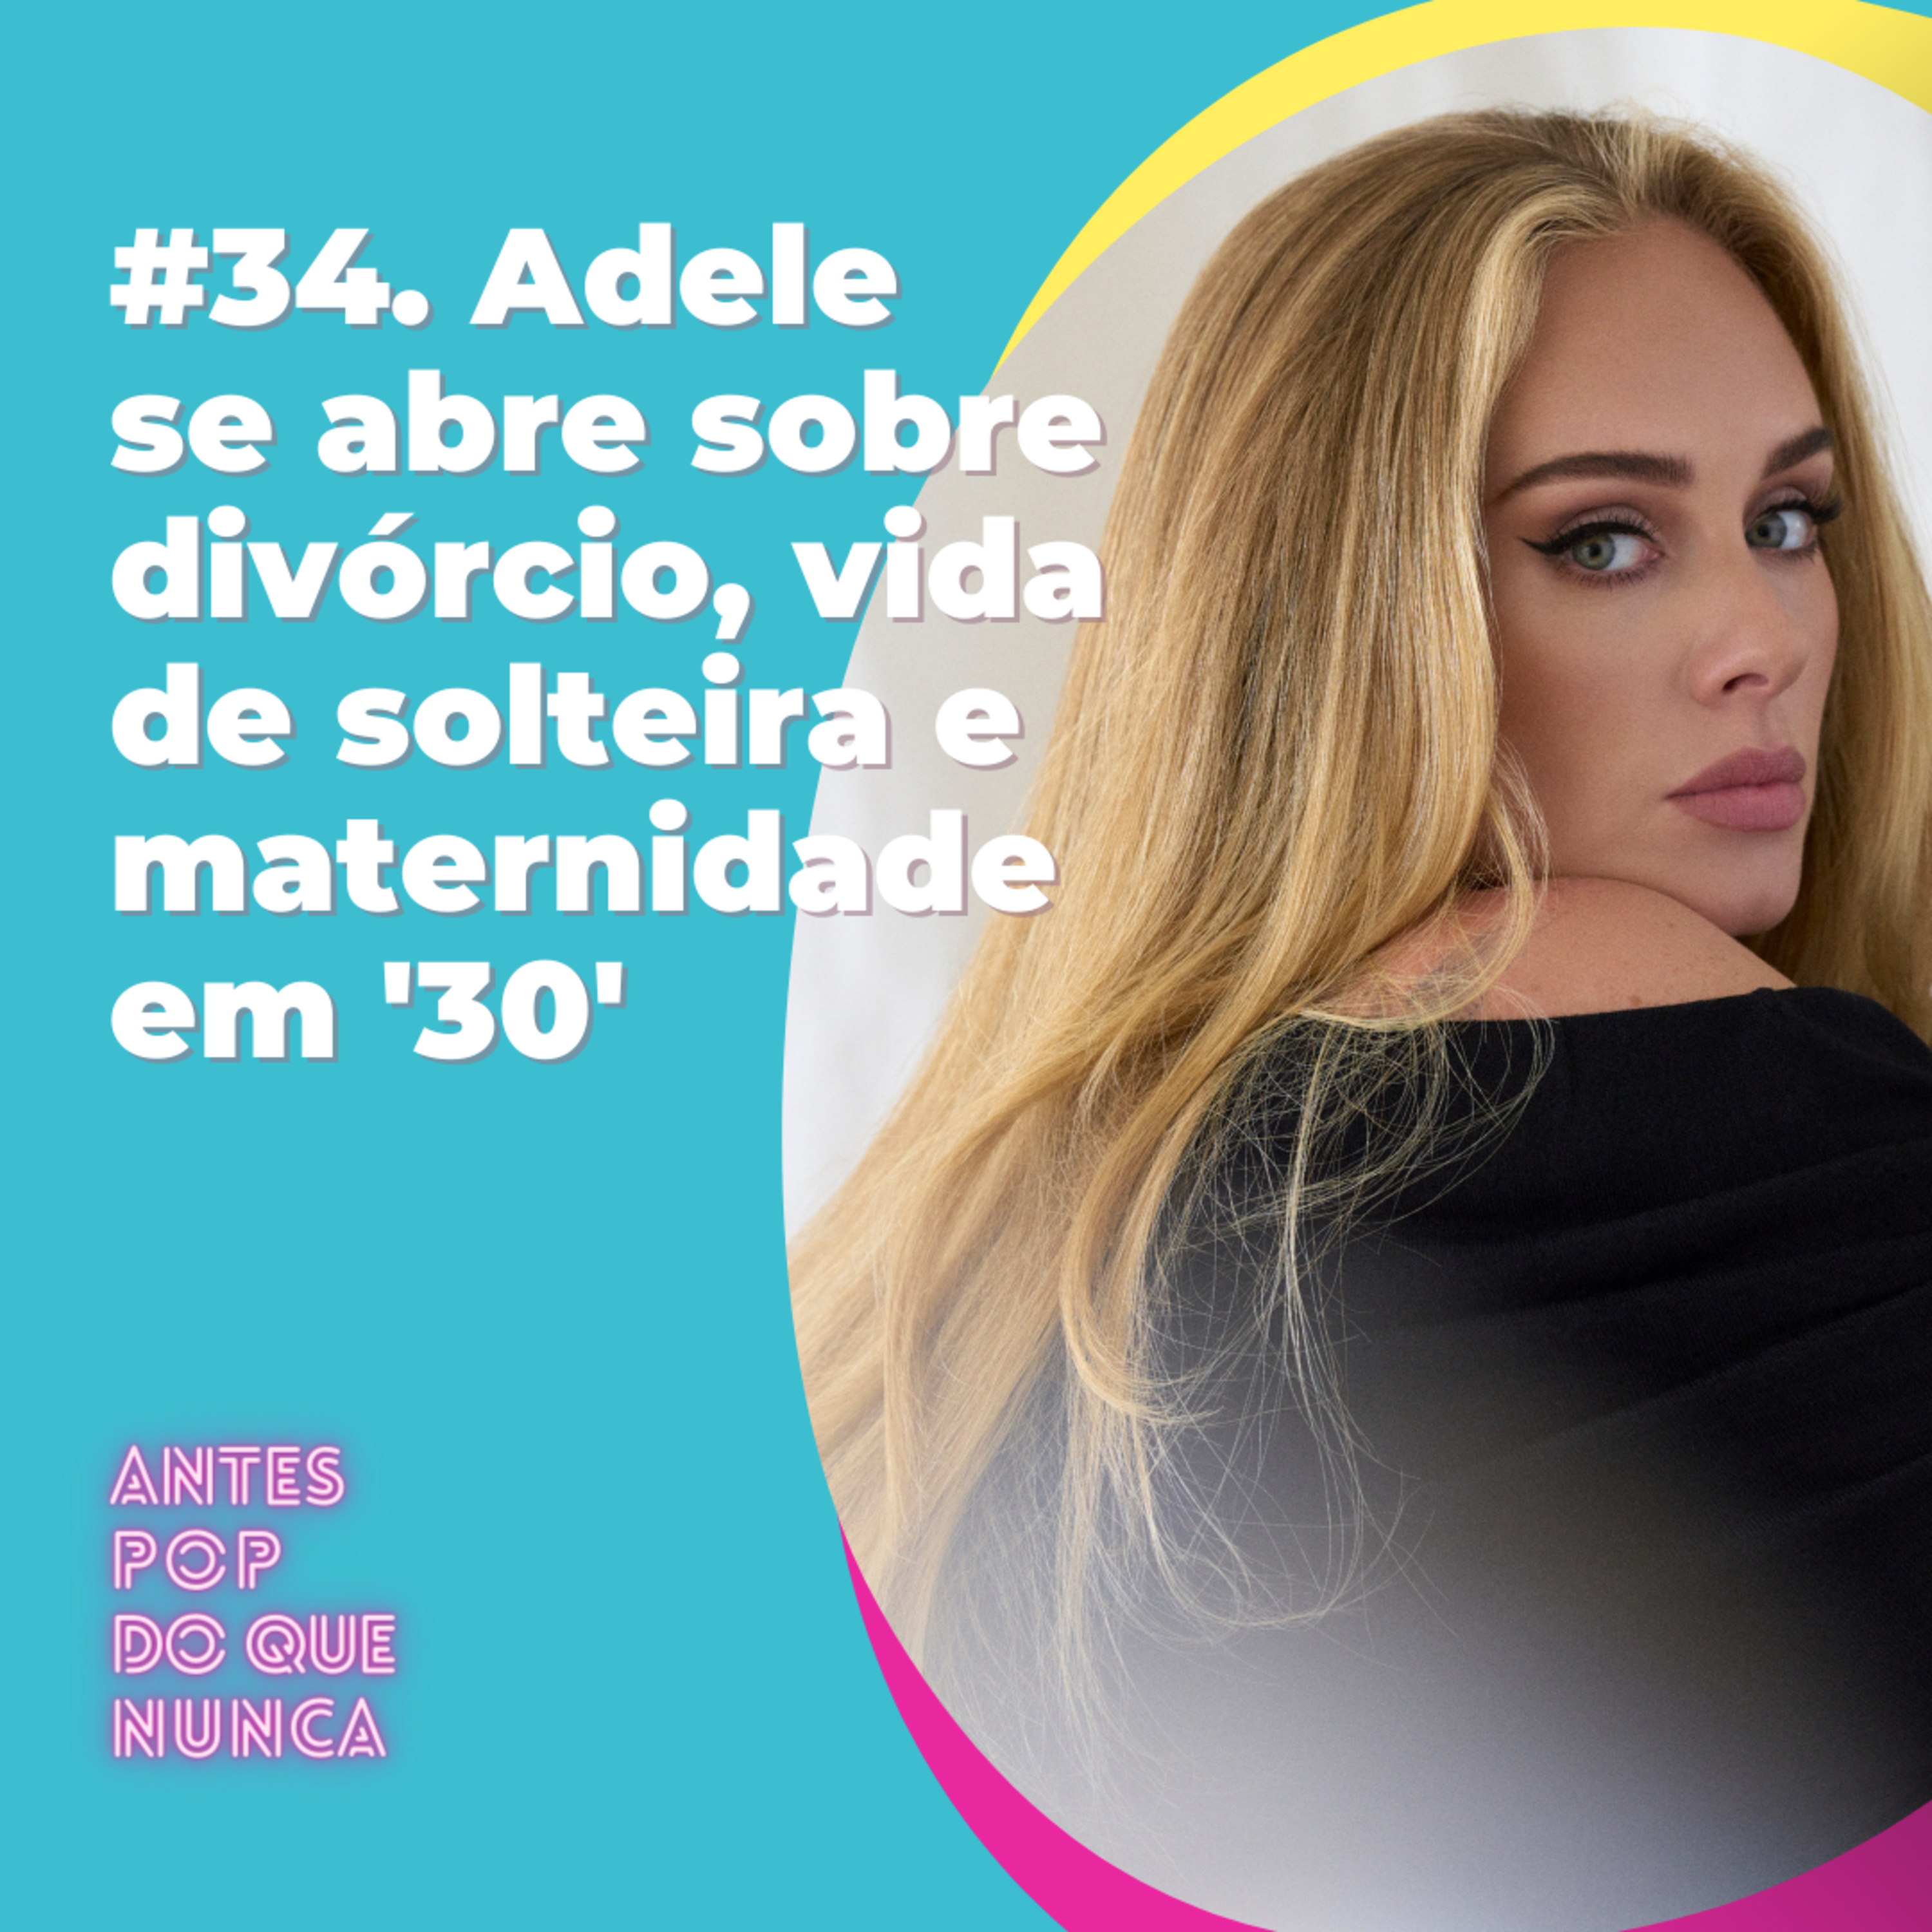 #34. Adele se abre sobre divórcio, vida de solteira e maternidade em “30”